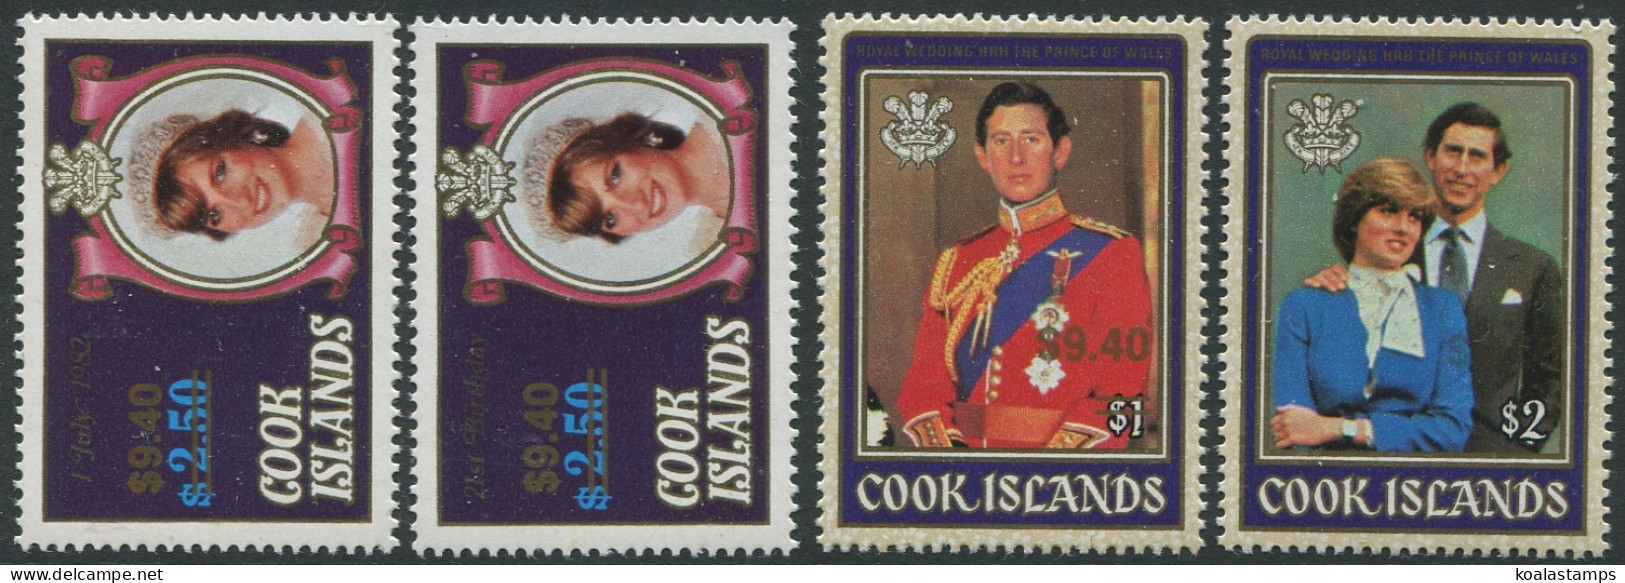 Cook Islands 1987 SG1124-1126 $9.40 Princess Diana Sets MNH - Cook Islands